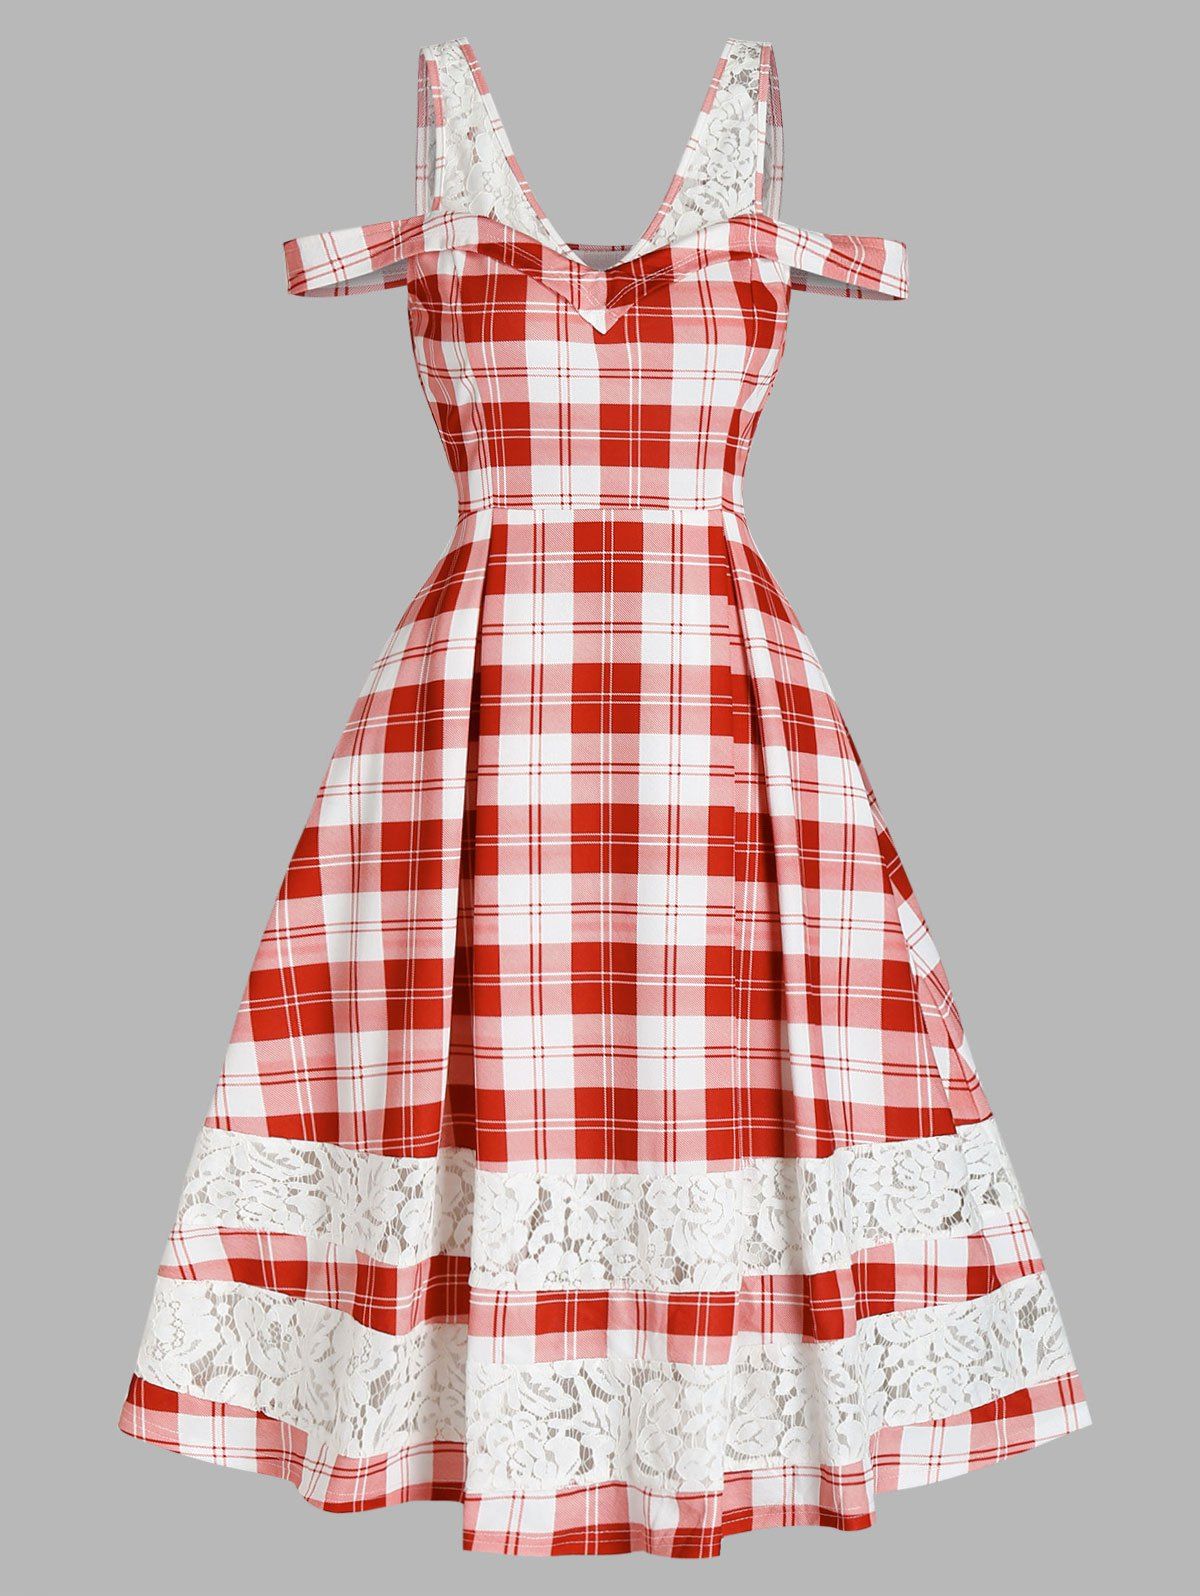 Plaid Print A Line Vintage Dress Cold Shoulder Lace Insert V Neck Dress - RED 3XL